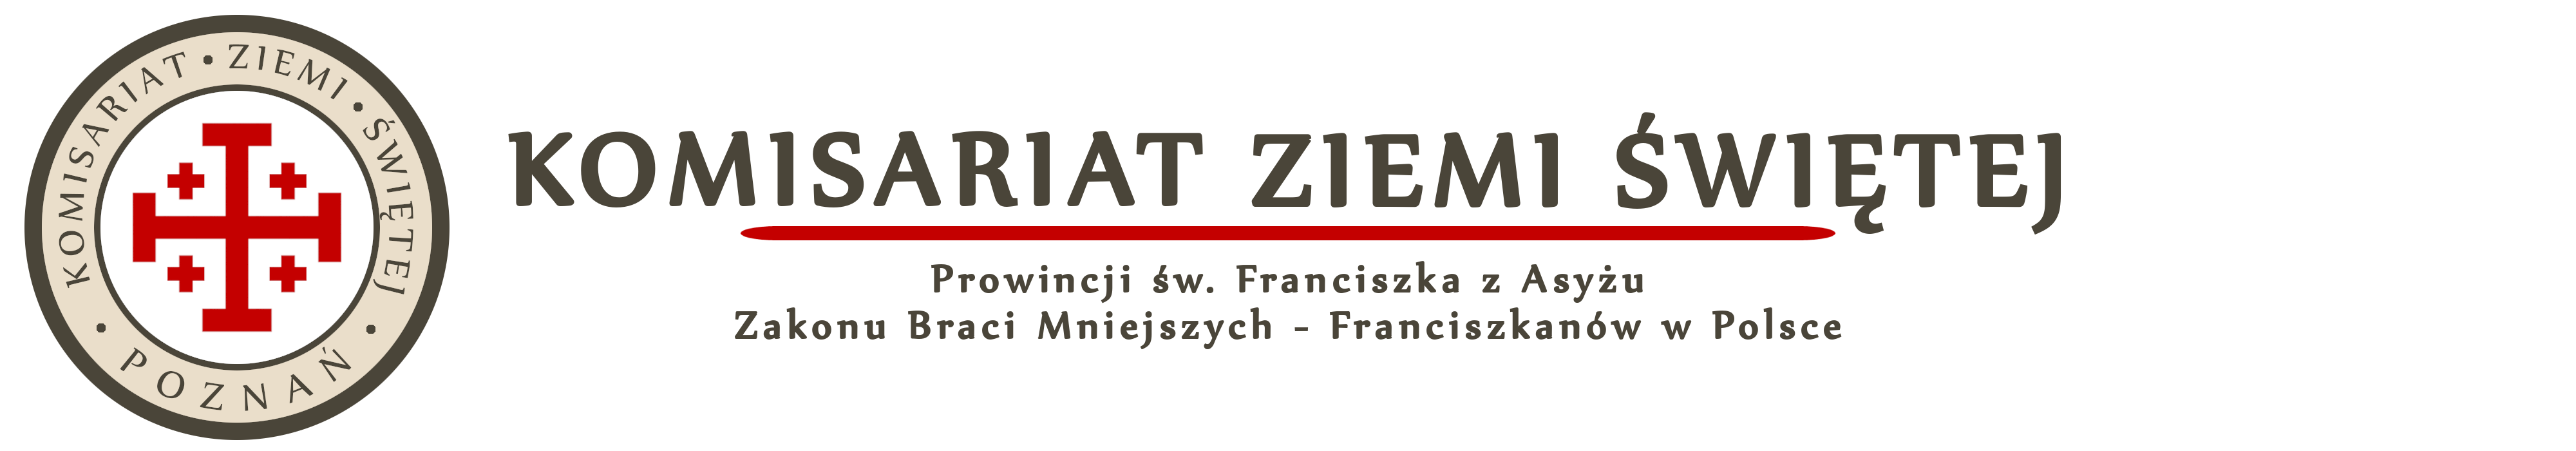 Komisariat Ziemi Świętej w Poznaniu